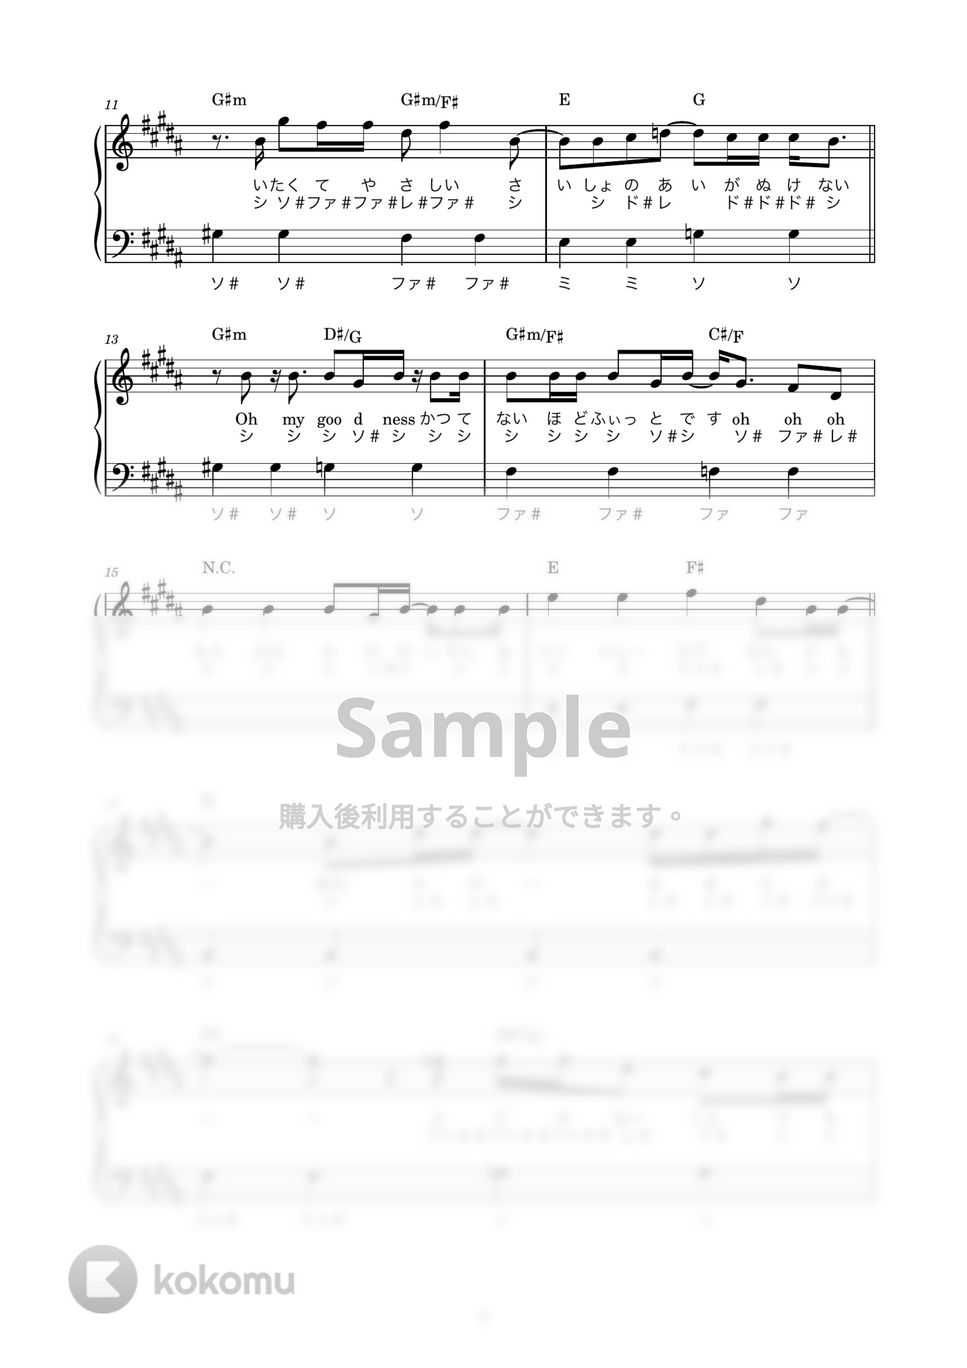 マカロニえんぴつ - リンジュー・ラヴ (かんたん / 歌詞付き / ドレミ付き / 初心者) by piano.tokyo